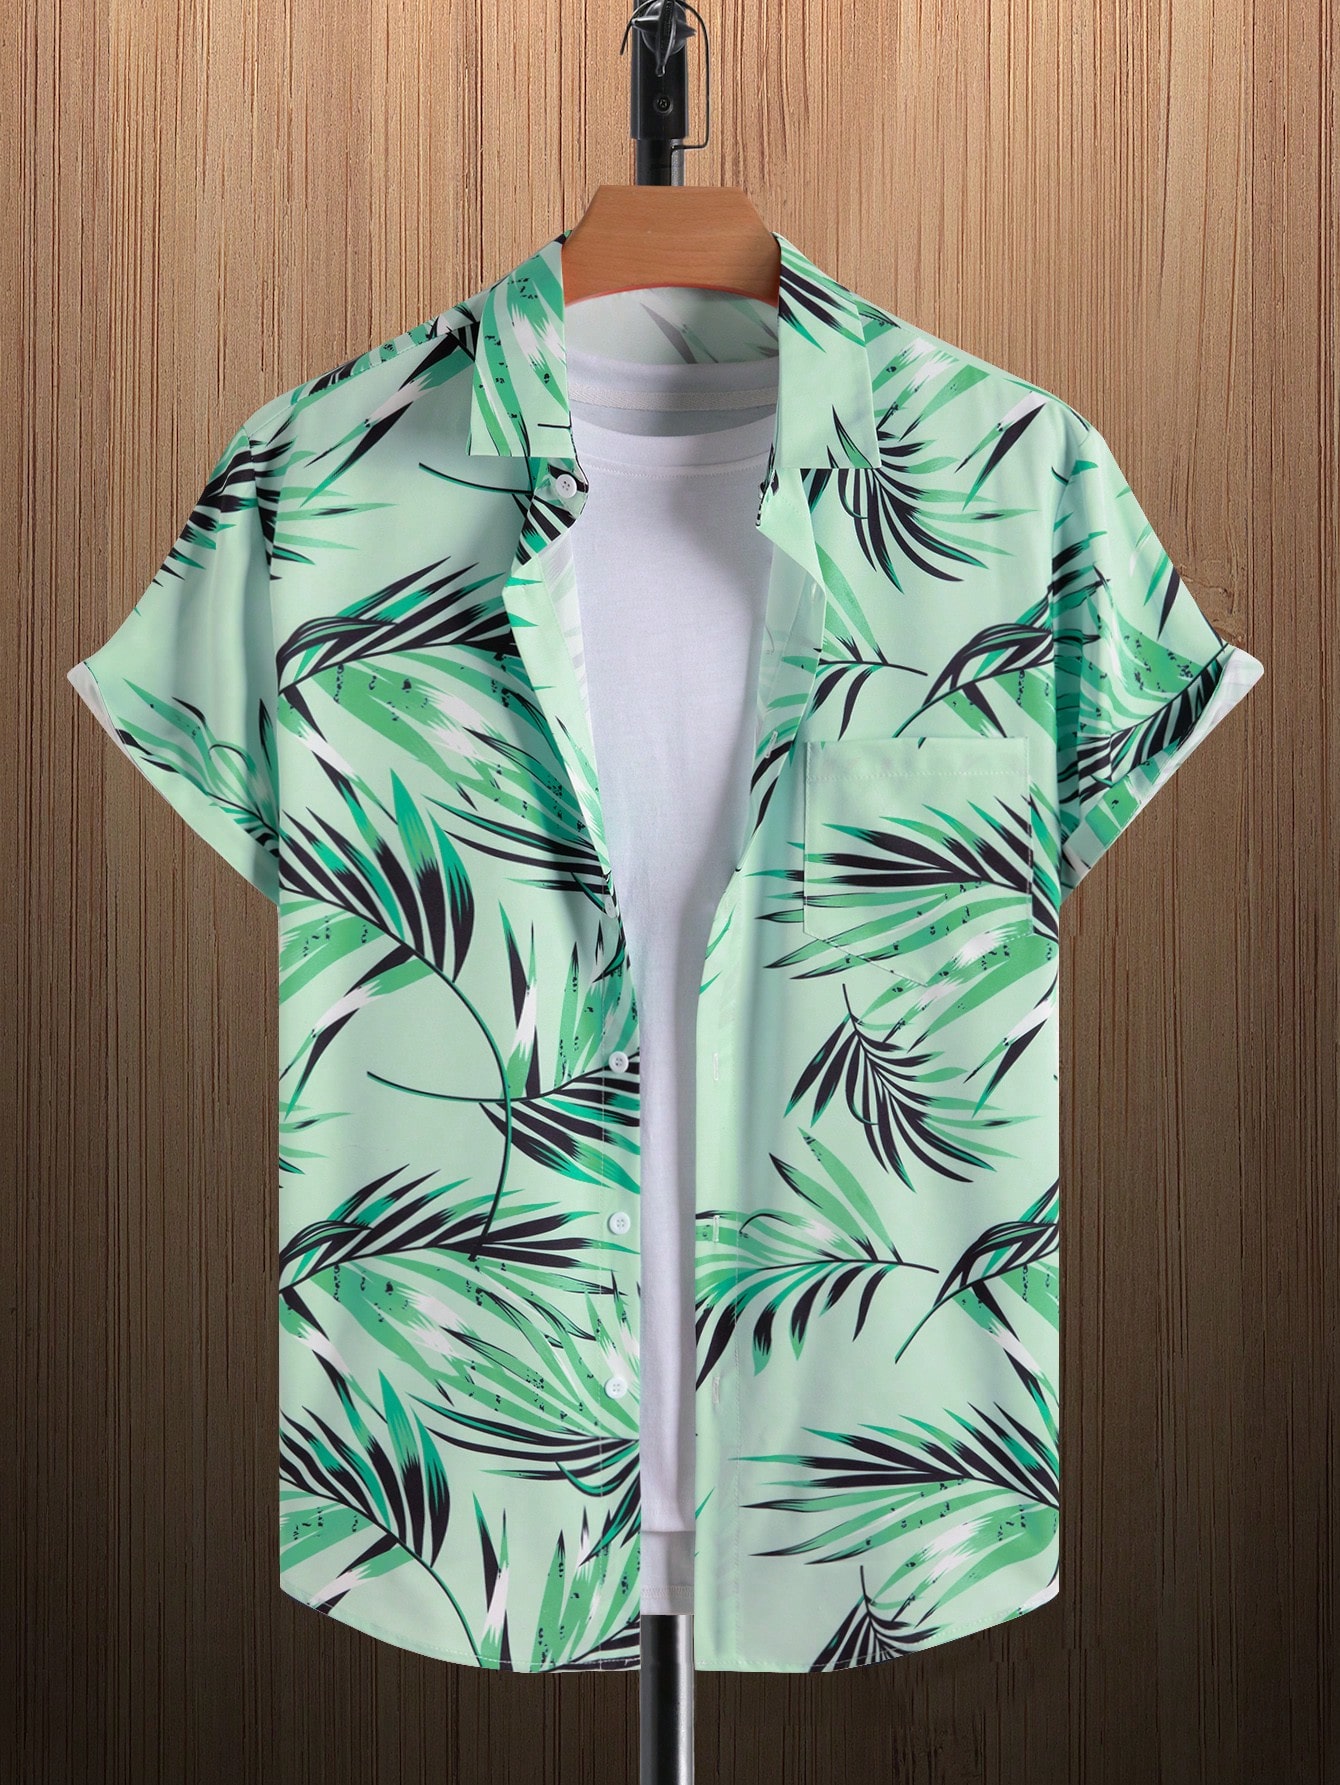 Мужская рубашка с короткими рукавами и принтом листьев на пуговицах Manfinity RSRT, мятно-зеленый рубашка мужская с коротким рукавом цифровым принтом на пуговицах повседневная домашняя одежда лето